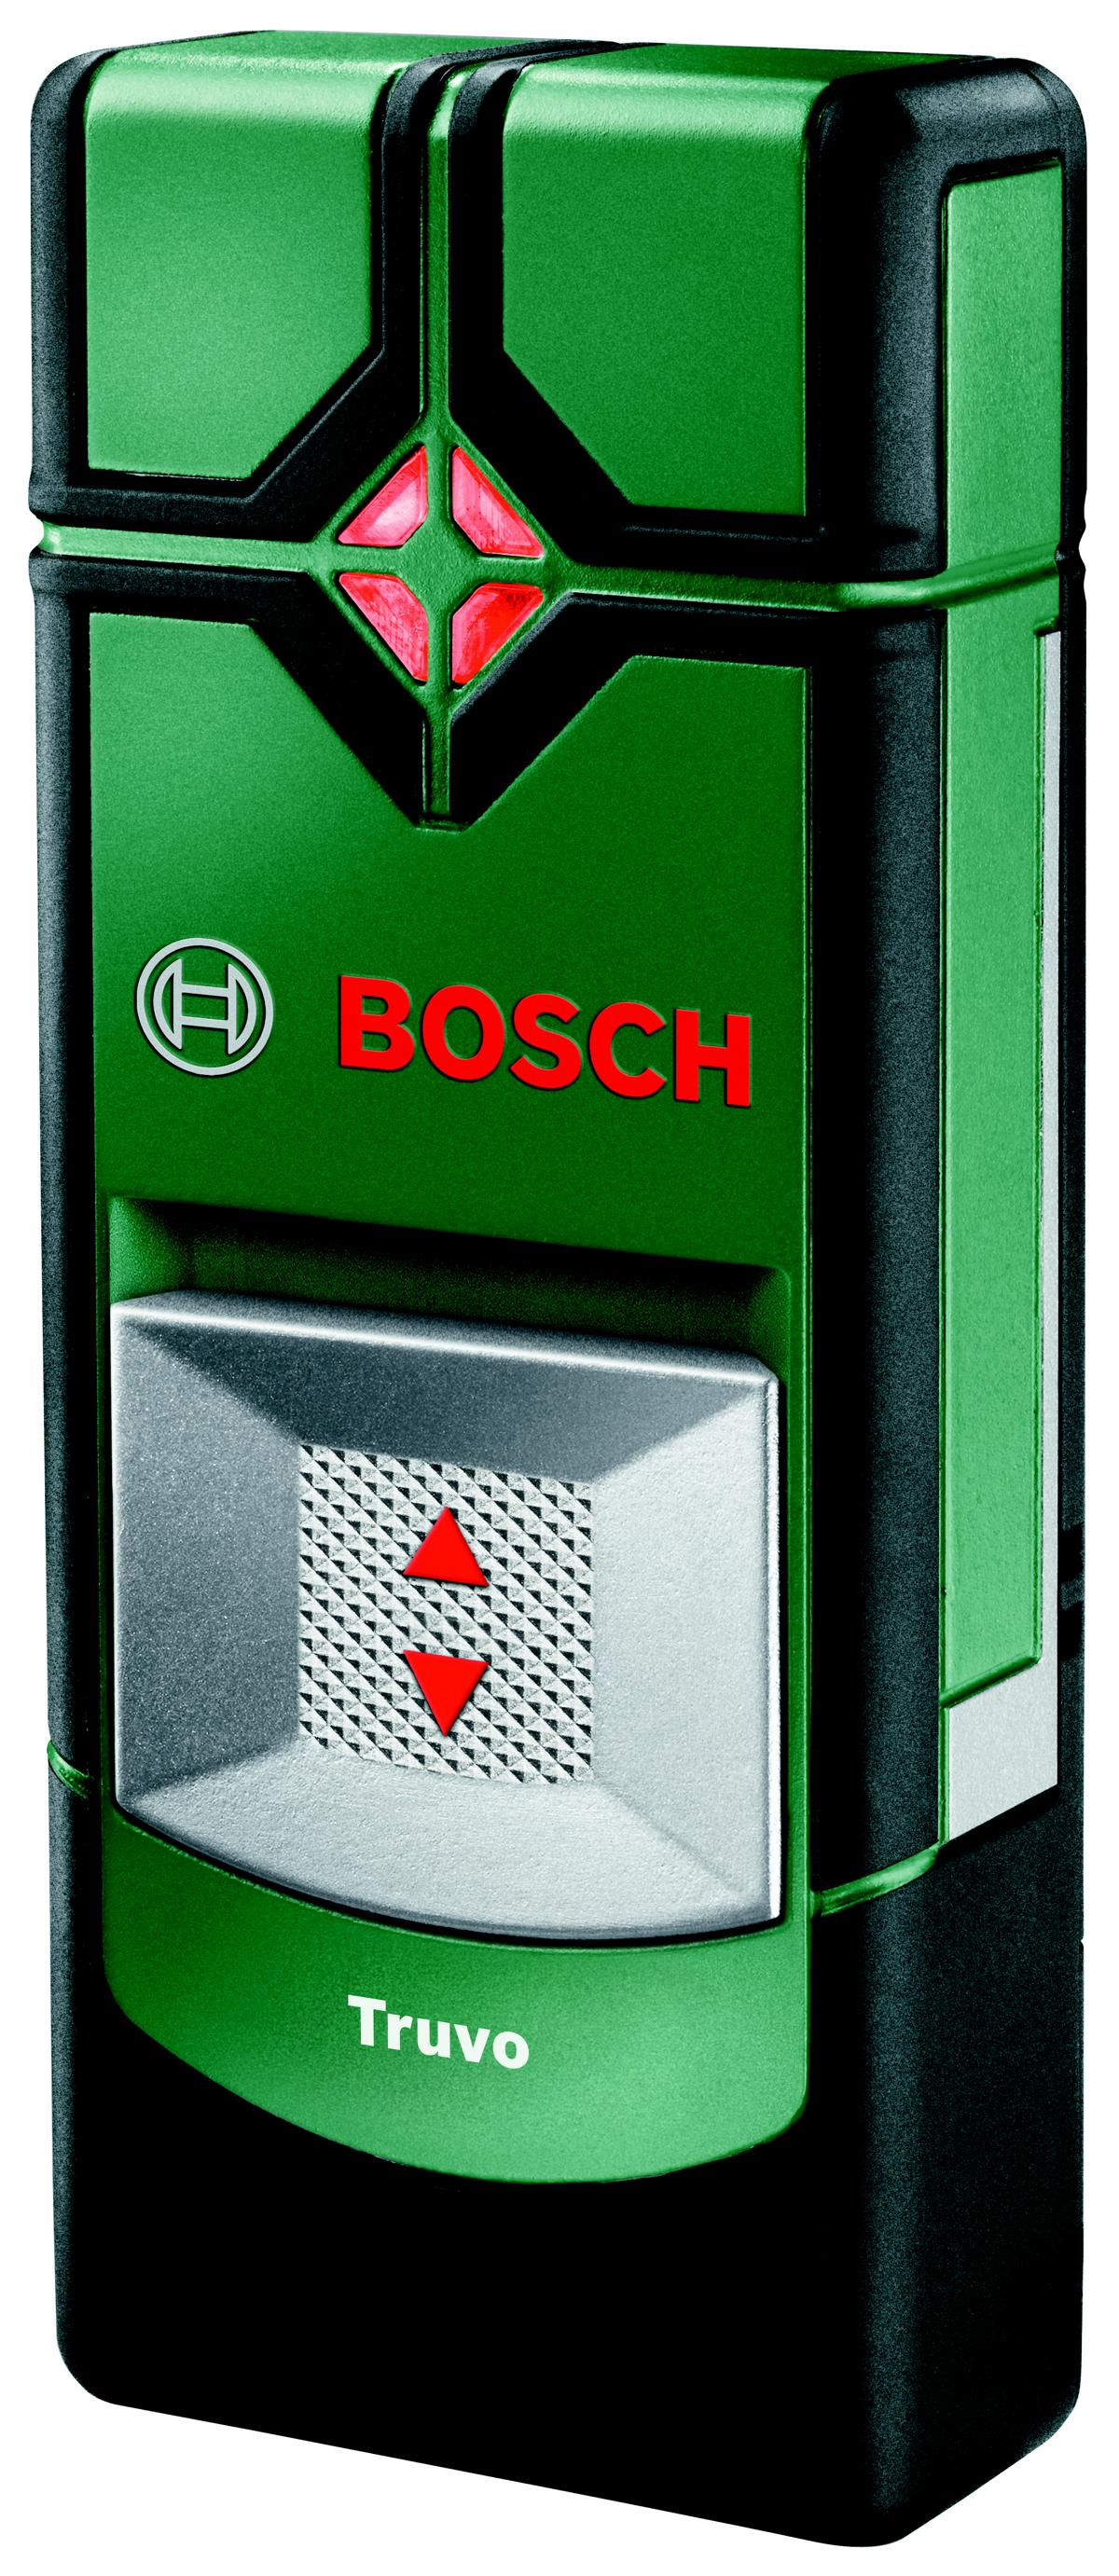 Bosch Ortungsgerät Truvo